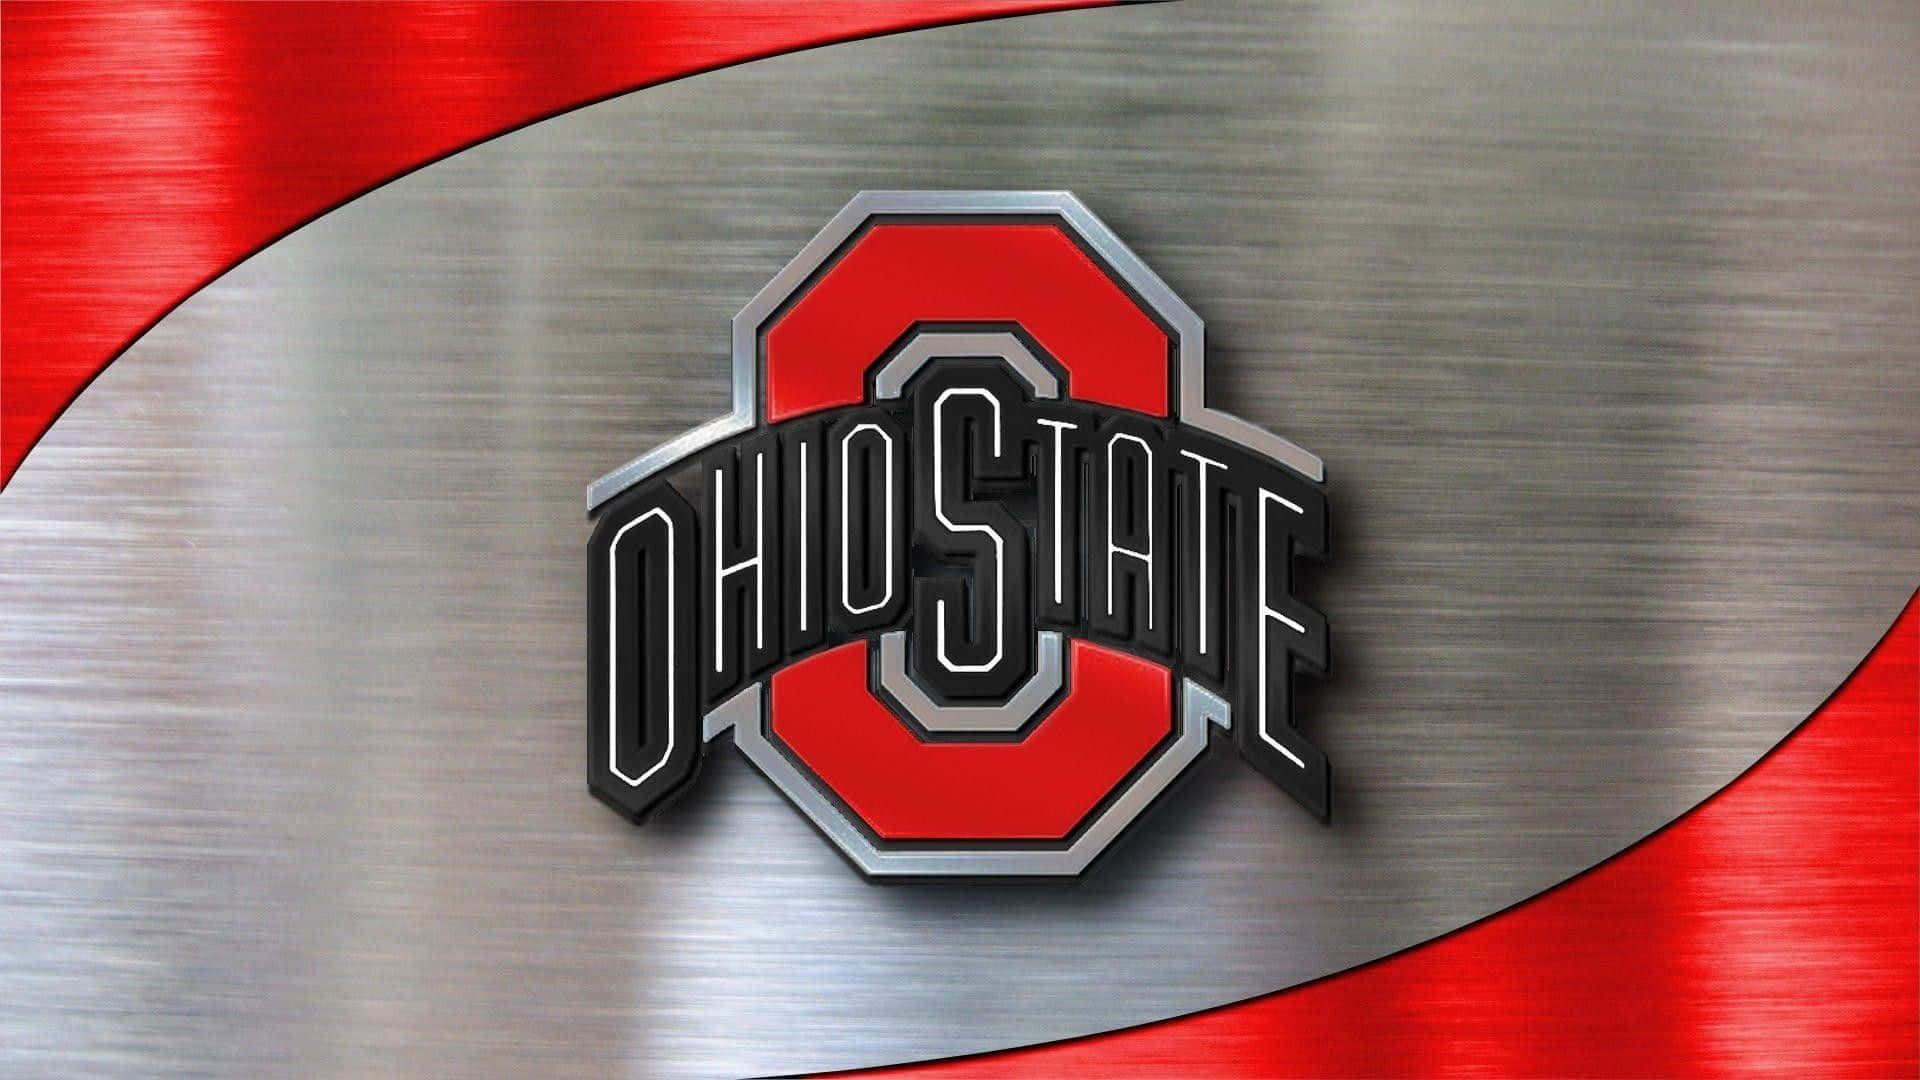 Ohiostate-logo Glänzendes Silber Und Gebürstetes Metall In Rot. Wallpaper